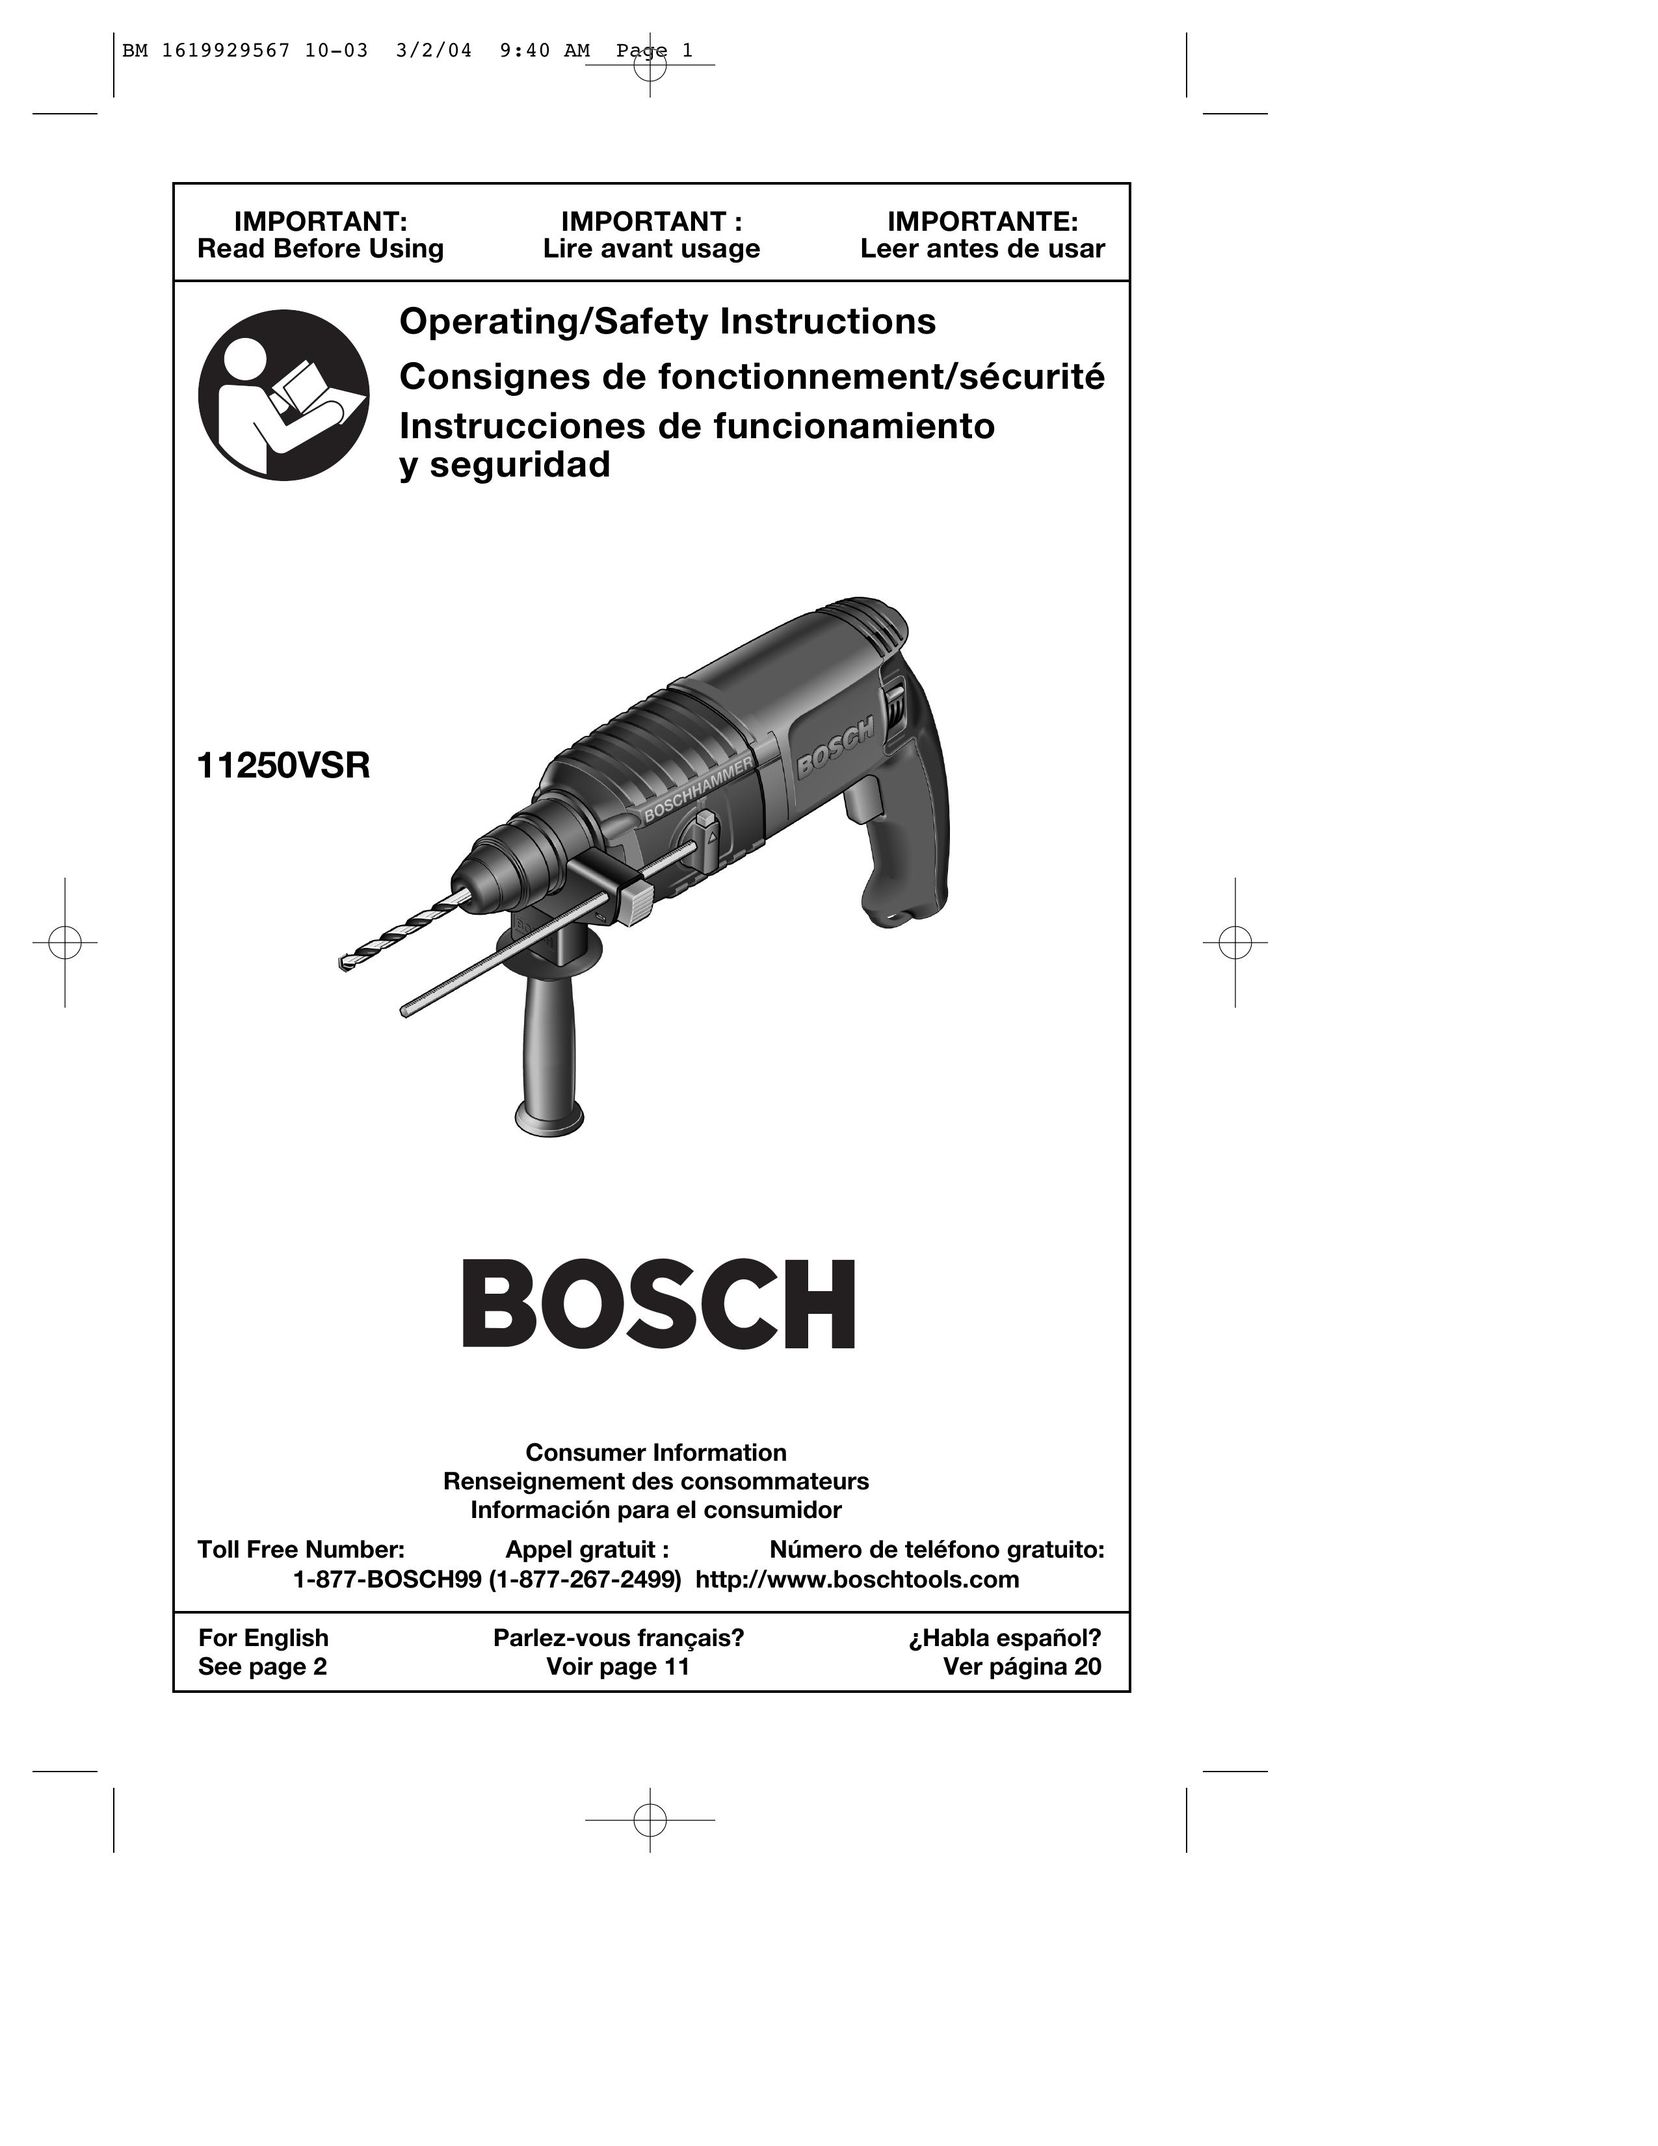 Bosch Power Tools 11250VSR Power Hammer User Manual